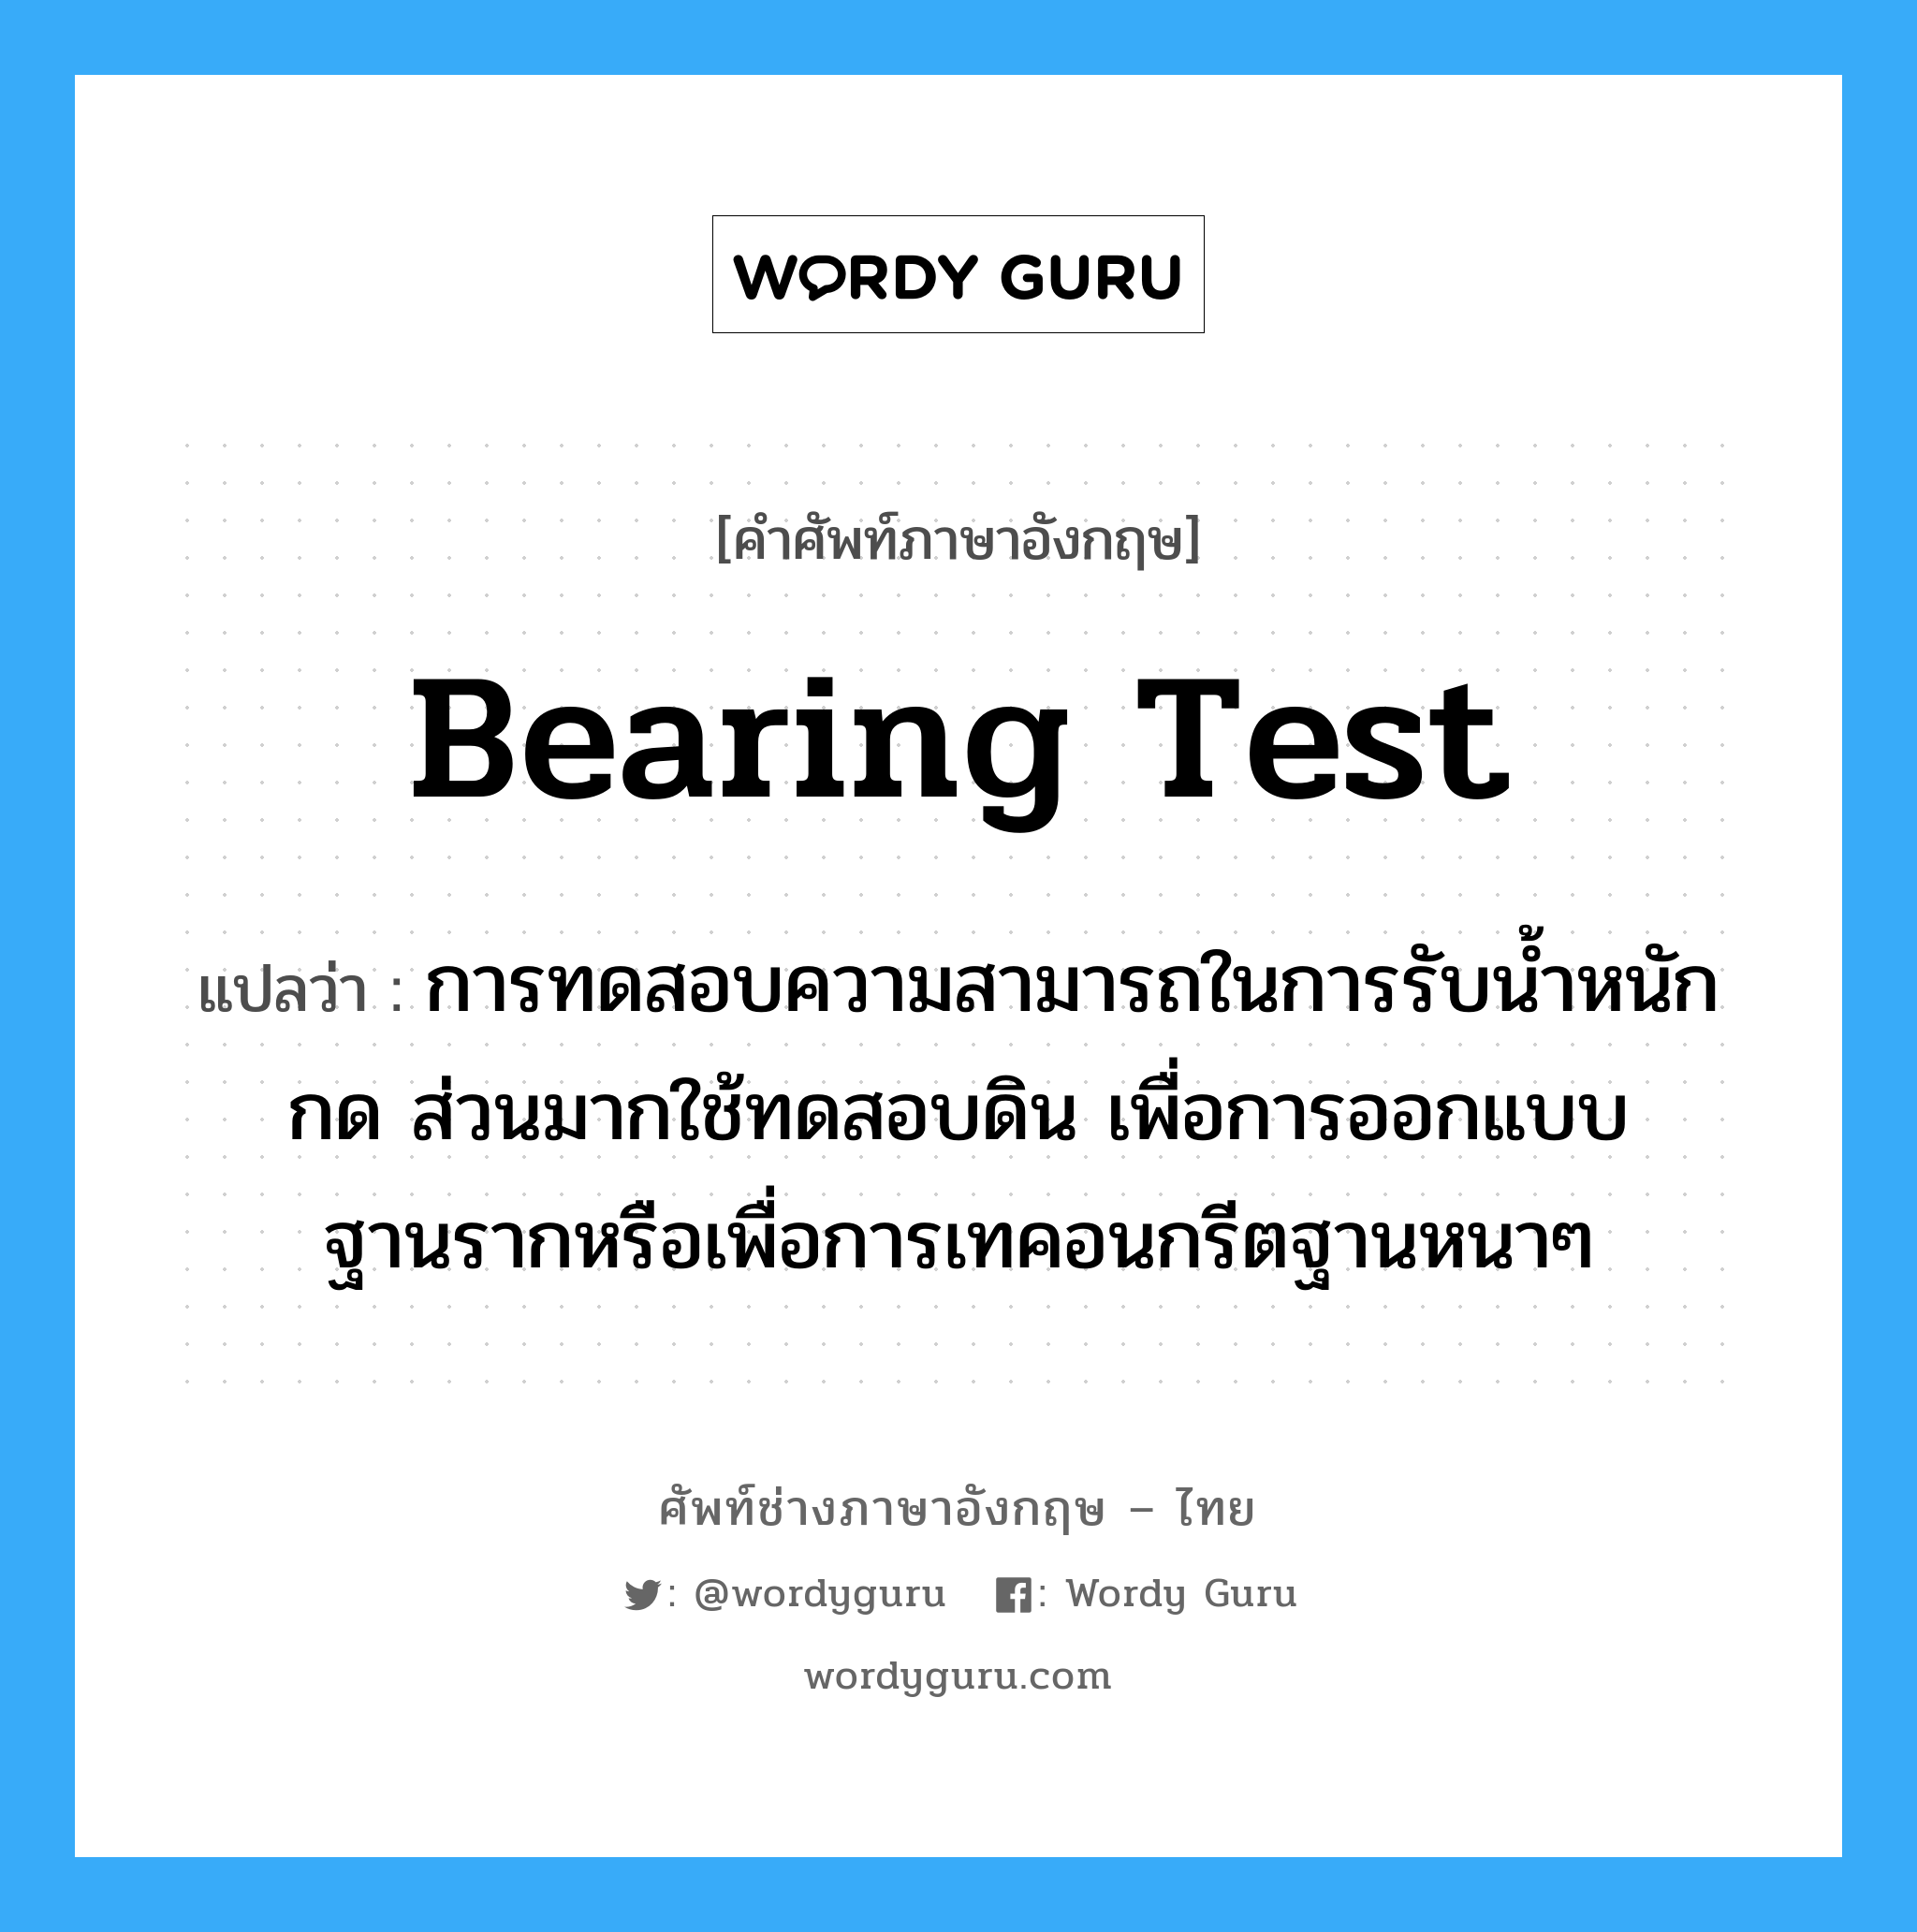 Bearing Test แปลว่า?, คำศัพท์ช่างภาษาอังกฤษ - ไทย Bearing Test คำศัพท์ภาษาอังกฤษ Bearing Test แปลว่า การทดสอบความสามารถในการรับน้ำหนักกด ส่วนมากใช้ทดสอบดิน เพื่อการออกแบบฐานรากหรือเพื่อการเทคอนกรีตฐานหนาๆ